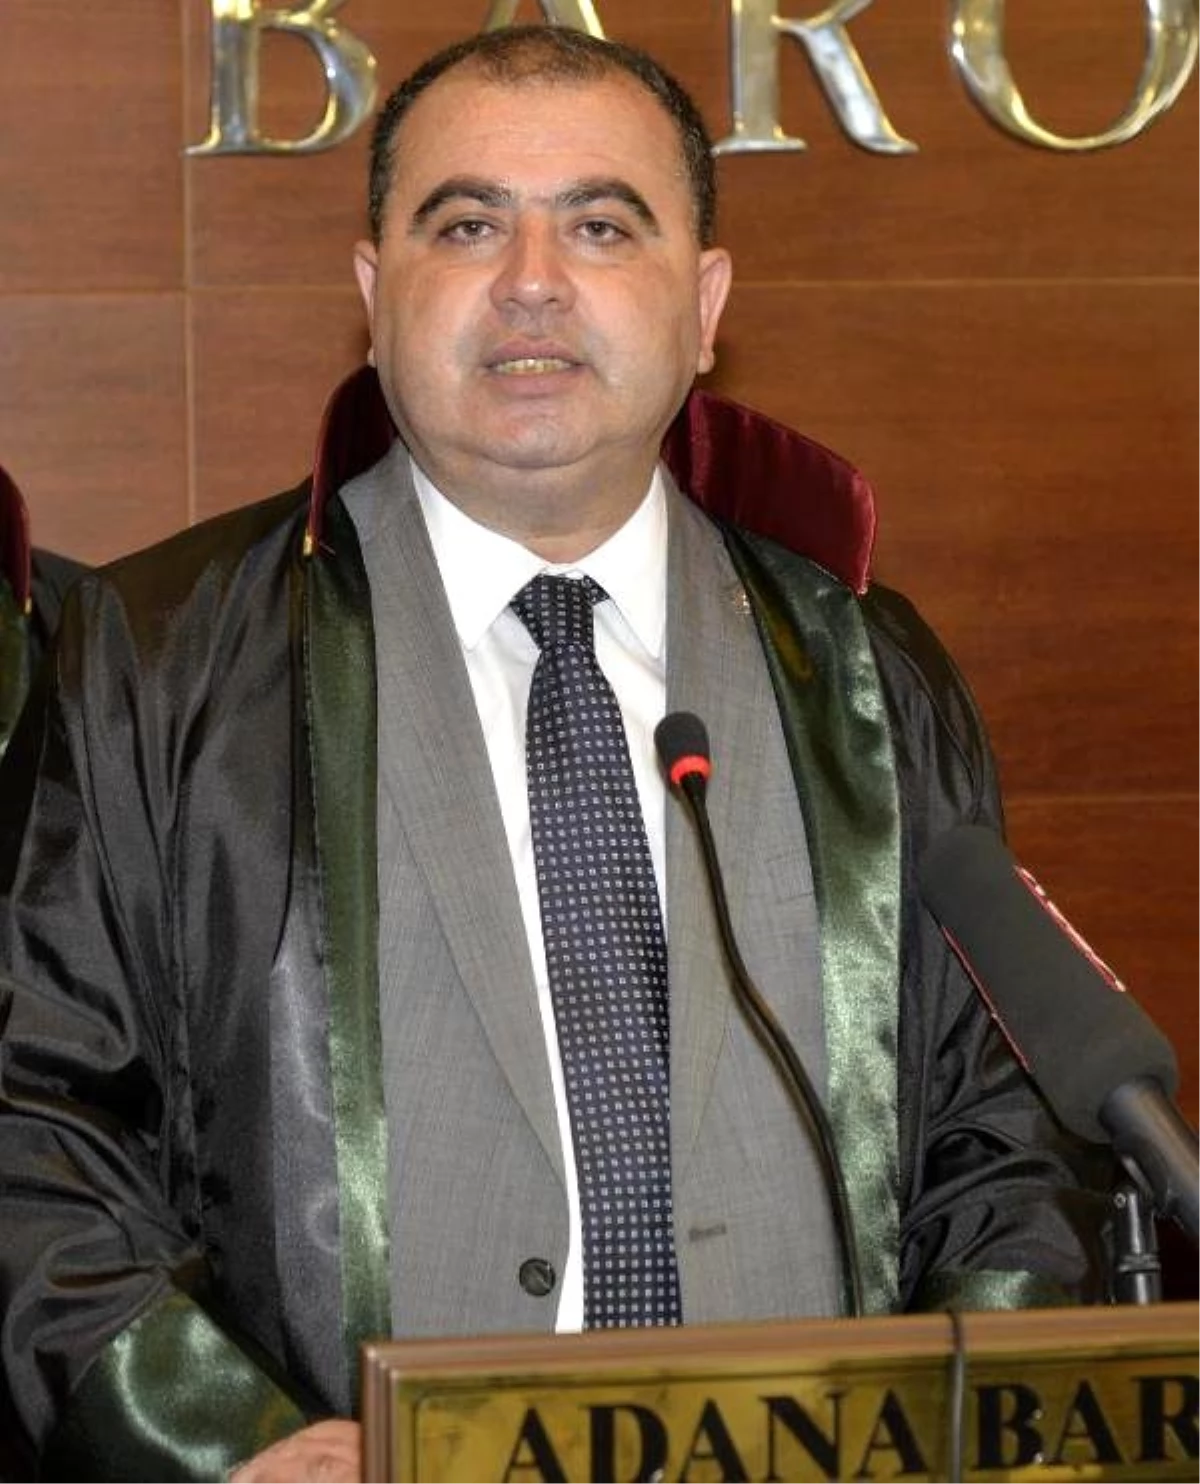 Adana Baro Başkanı: Cezaevlerinde Güvenlikle İlgili Her Şey Yeniden Gözden Geçirilmeli